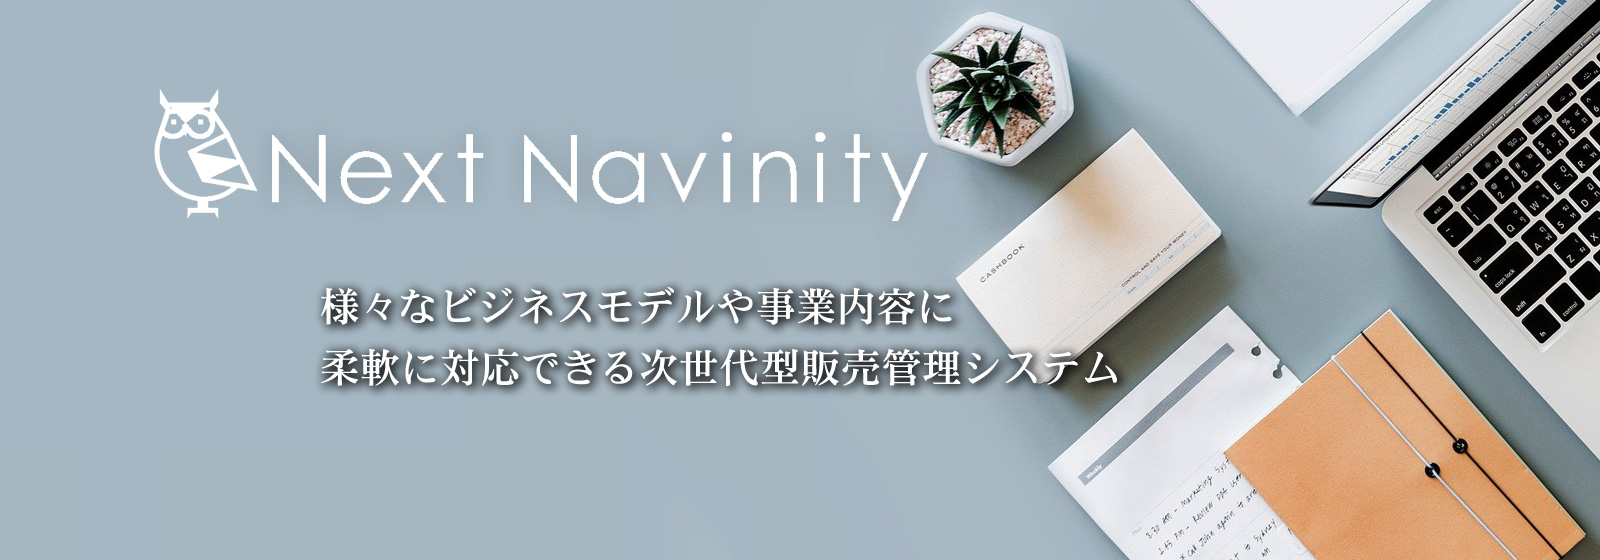 様々なビジネスモデルや事業内容に柔軟に対応できる次世代型販売管理システム「NextNavinity]